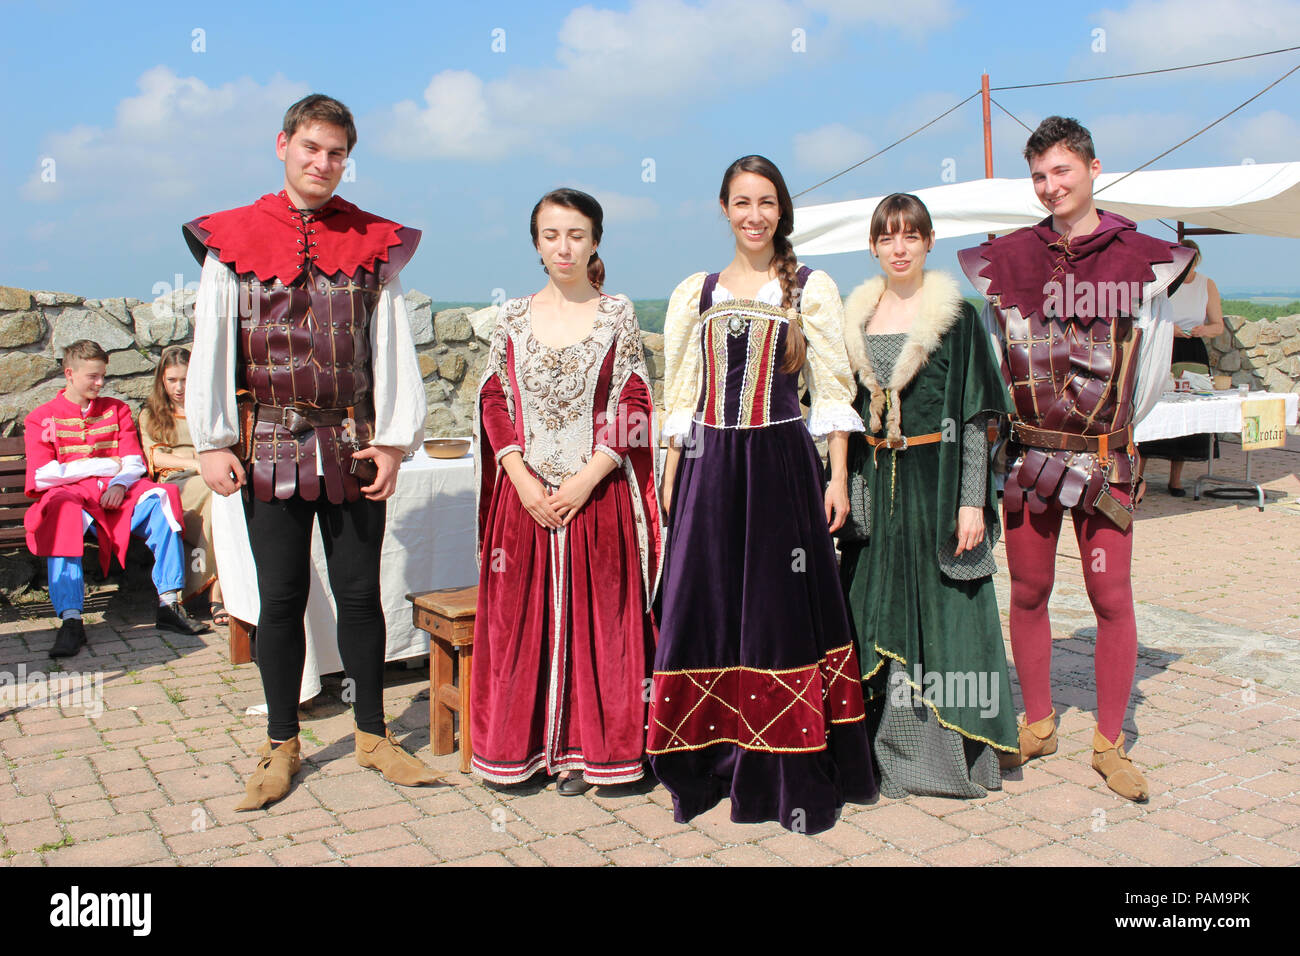 Gruppo di persone vestite in costumi storici - festival medievale Foto Stock